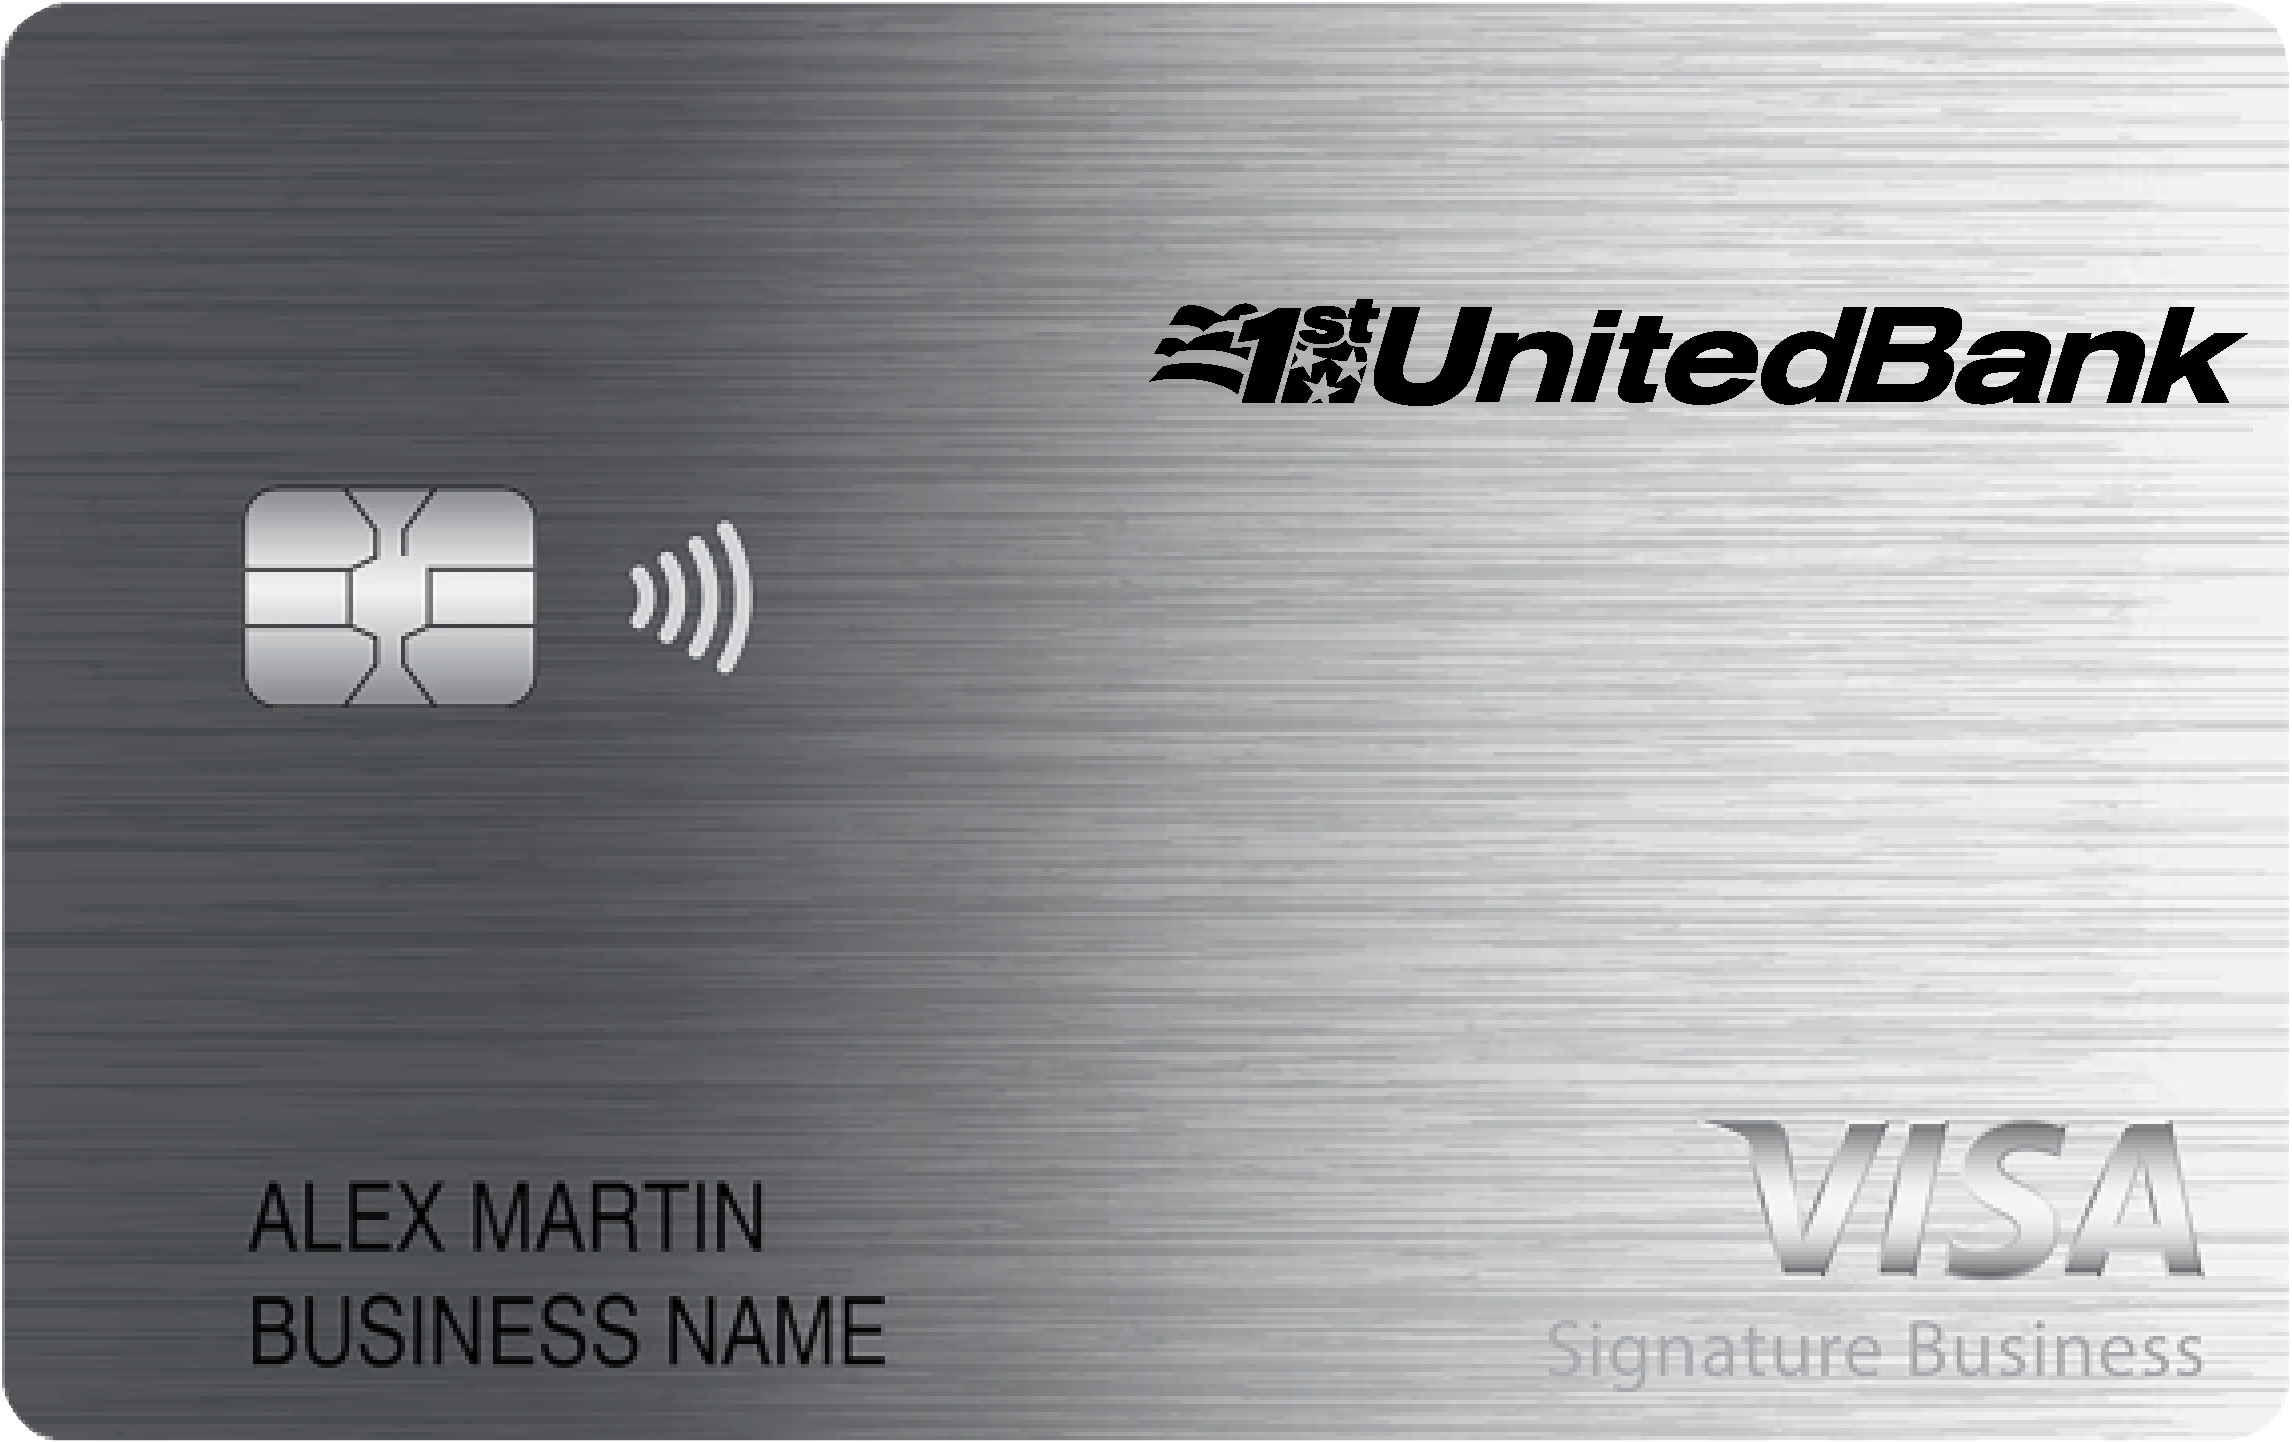 1st United Bank Smart Business Rewards Card